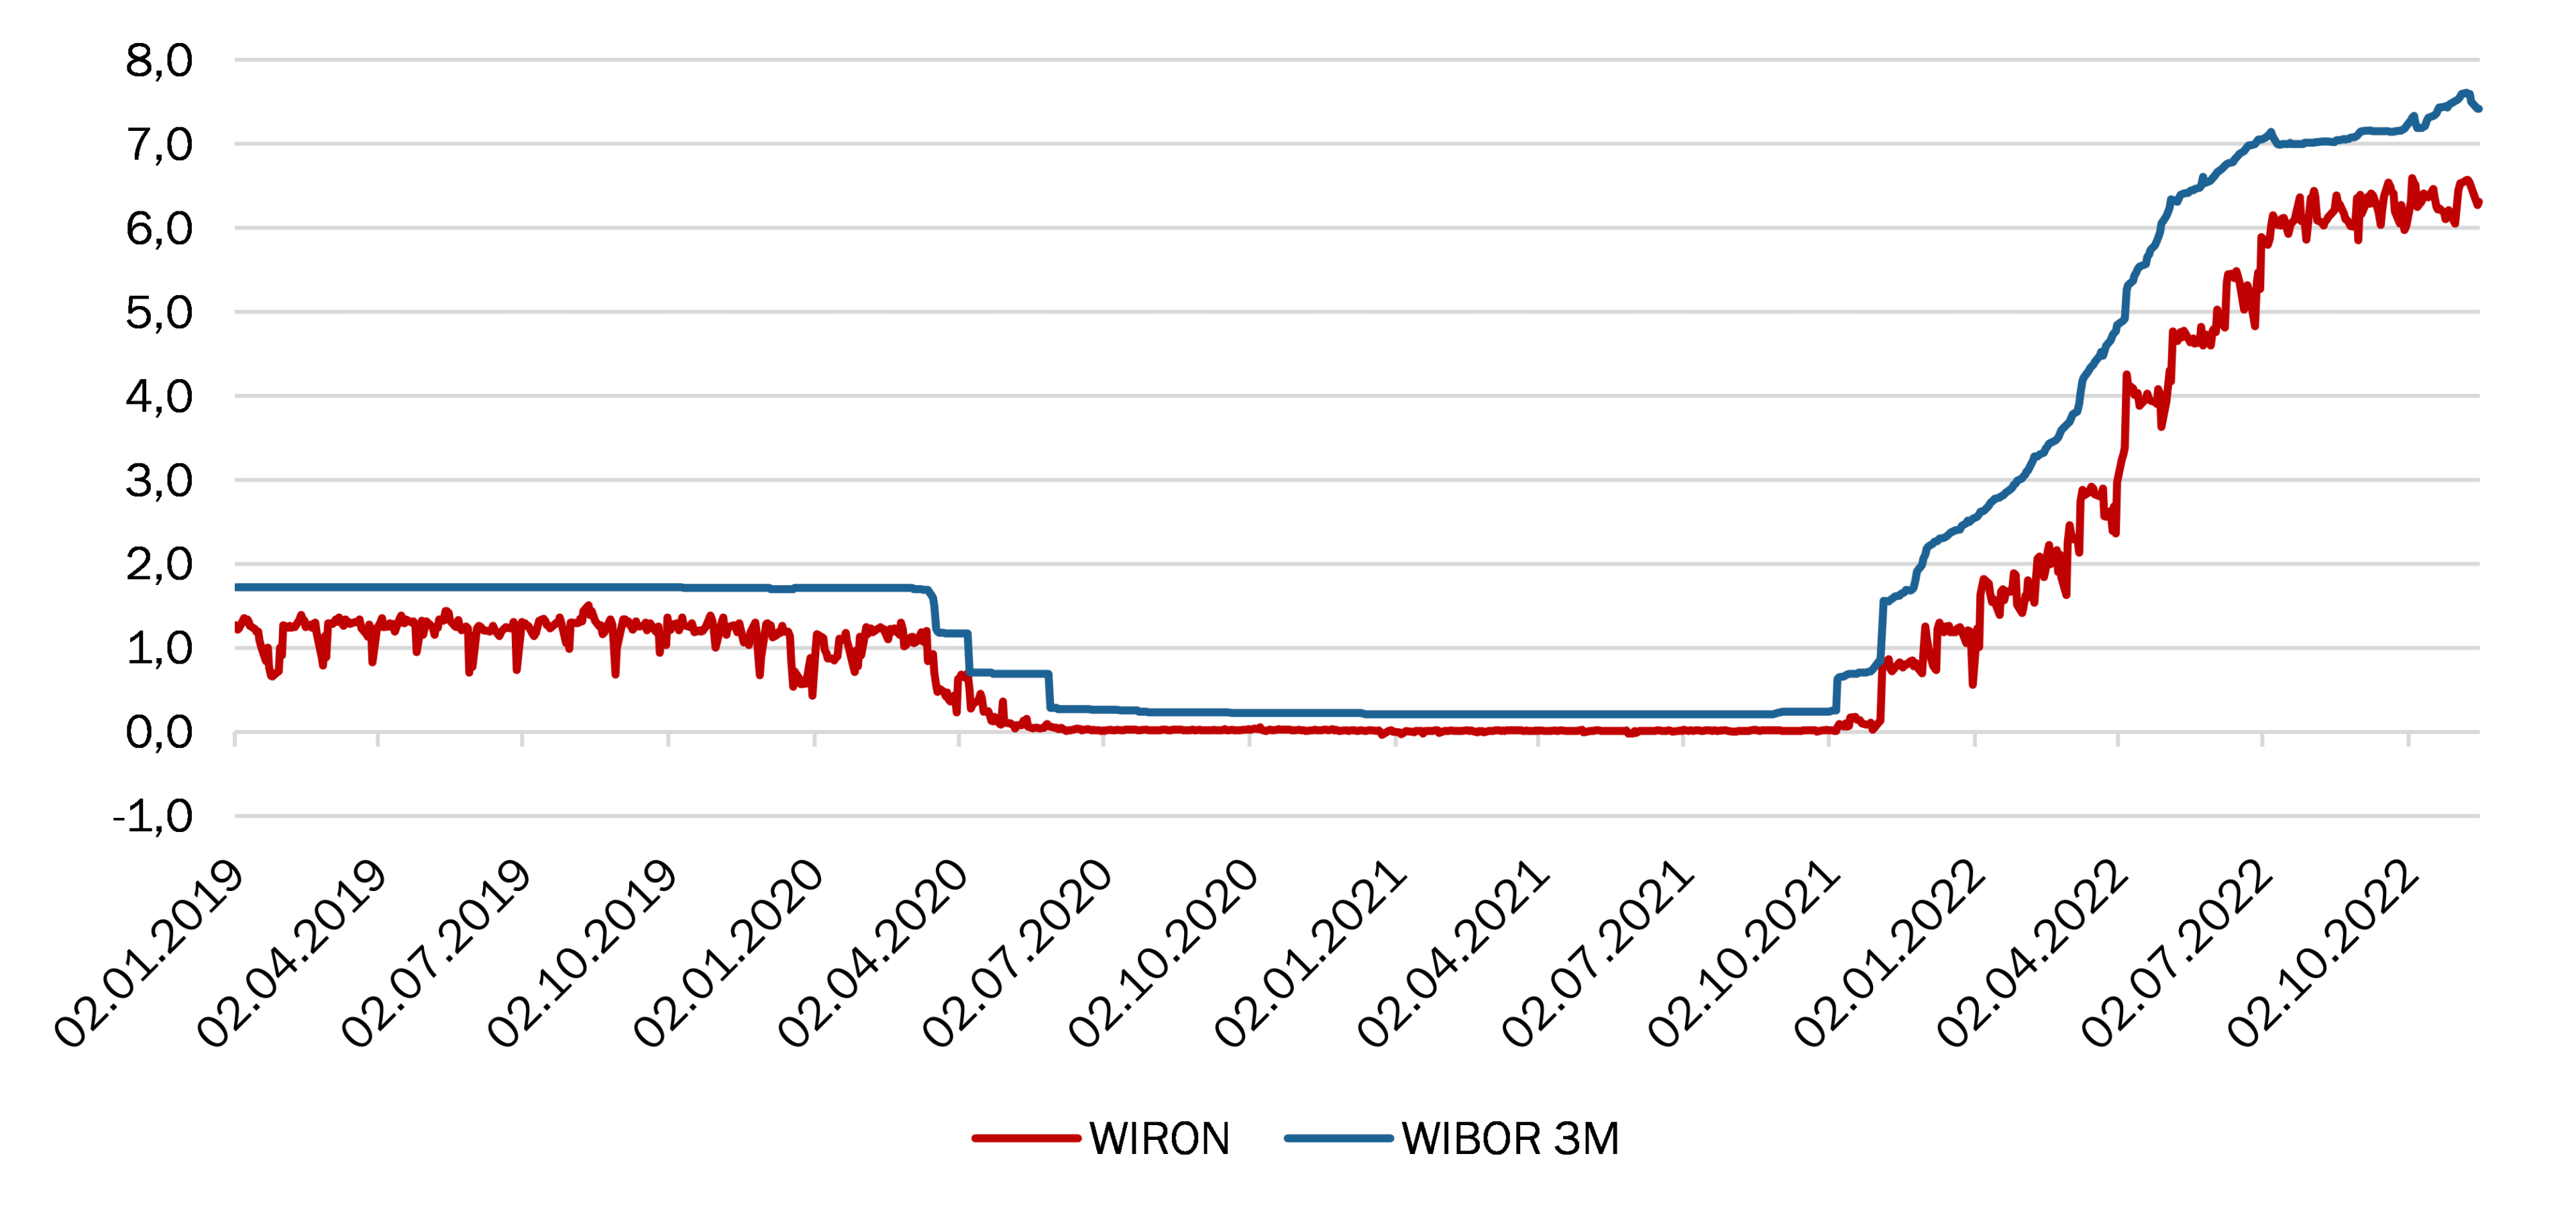 Porównanie wskaźników WIRON i WIBOR